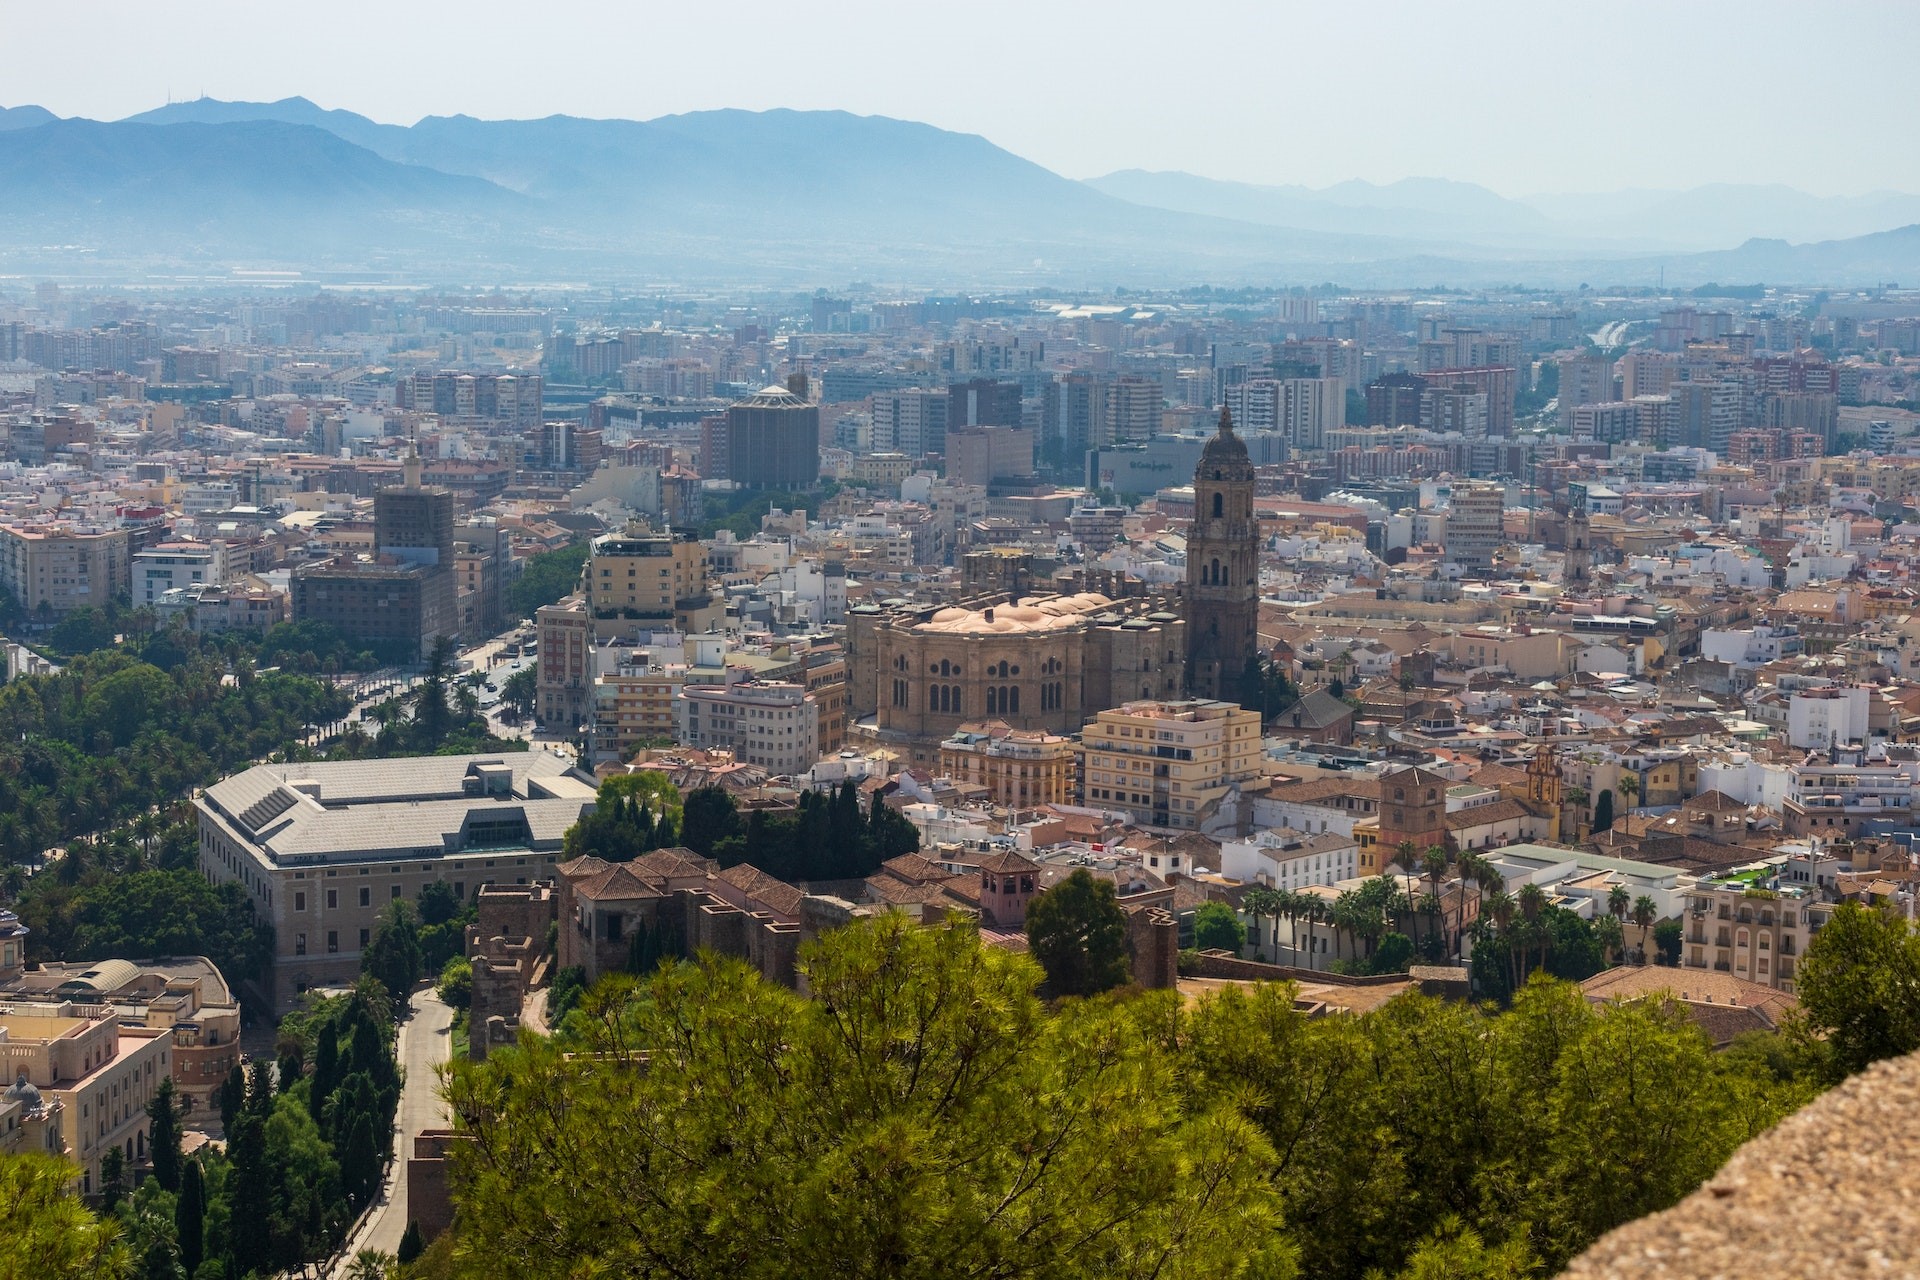 Faa byen paa en afstand find roen i Spanske feriebyer